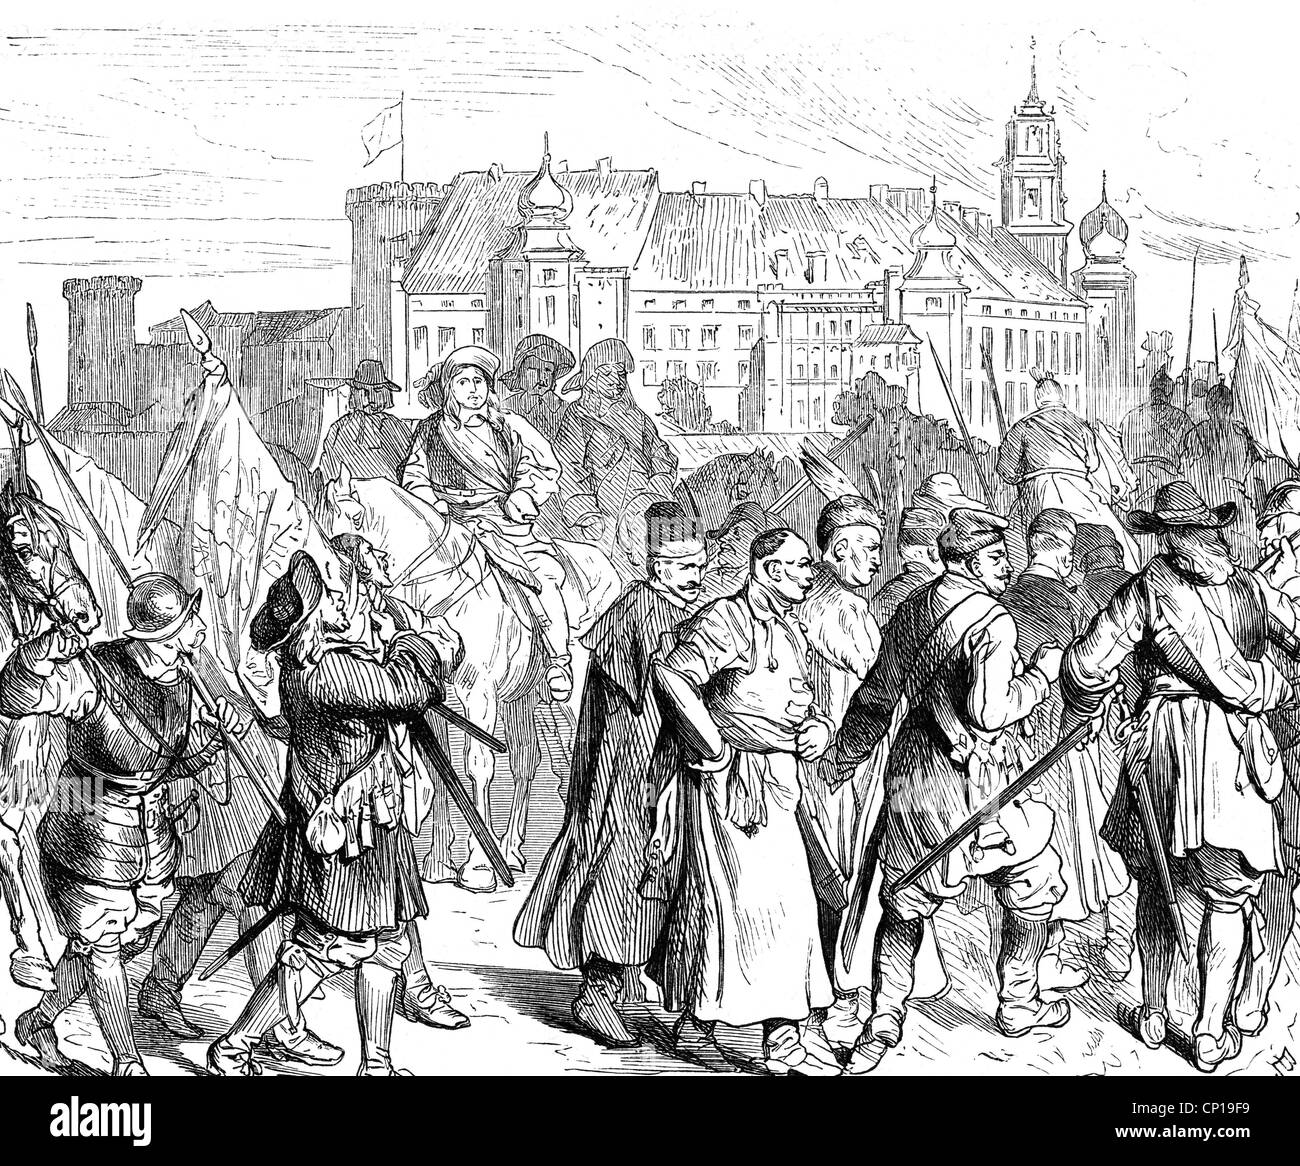 Charles X Gustav, 8.11.1622 - 23 2.1660, König von Schweden 16.6.1654 - 23.2.1660, im eroberten Polen, 1655, Holzgravur, 19. Jahrhundert, Stockfoto